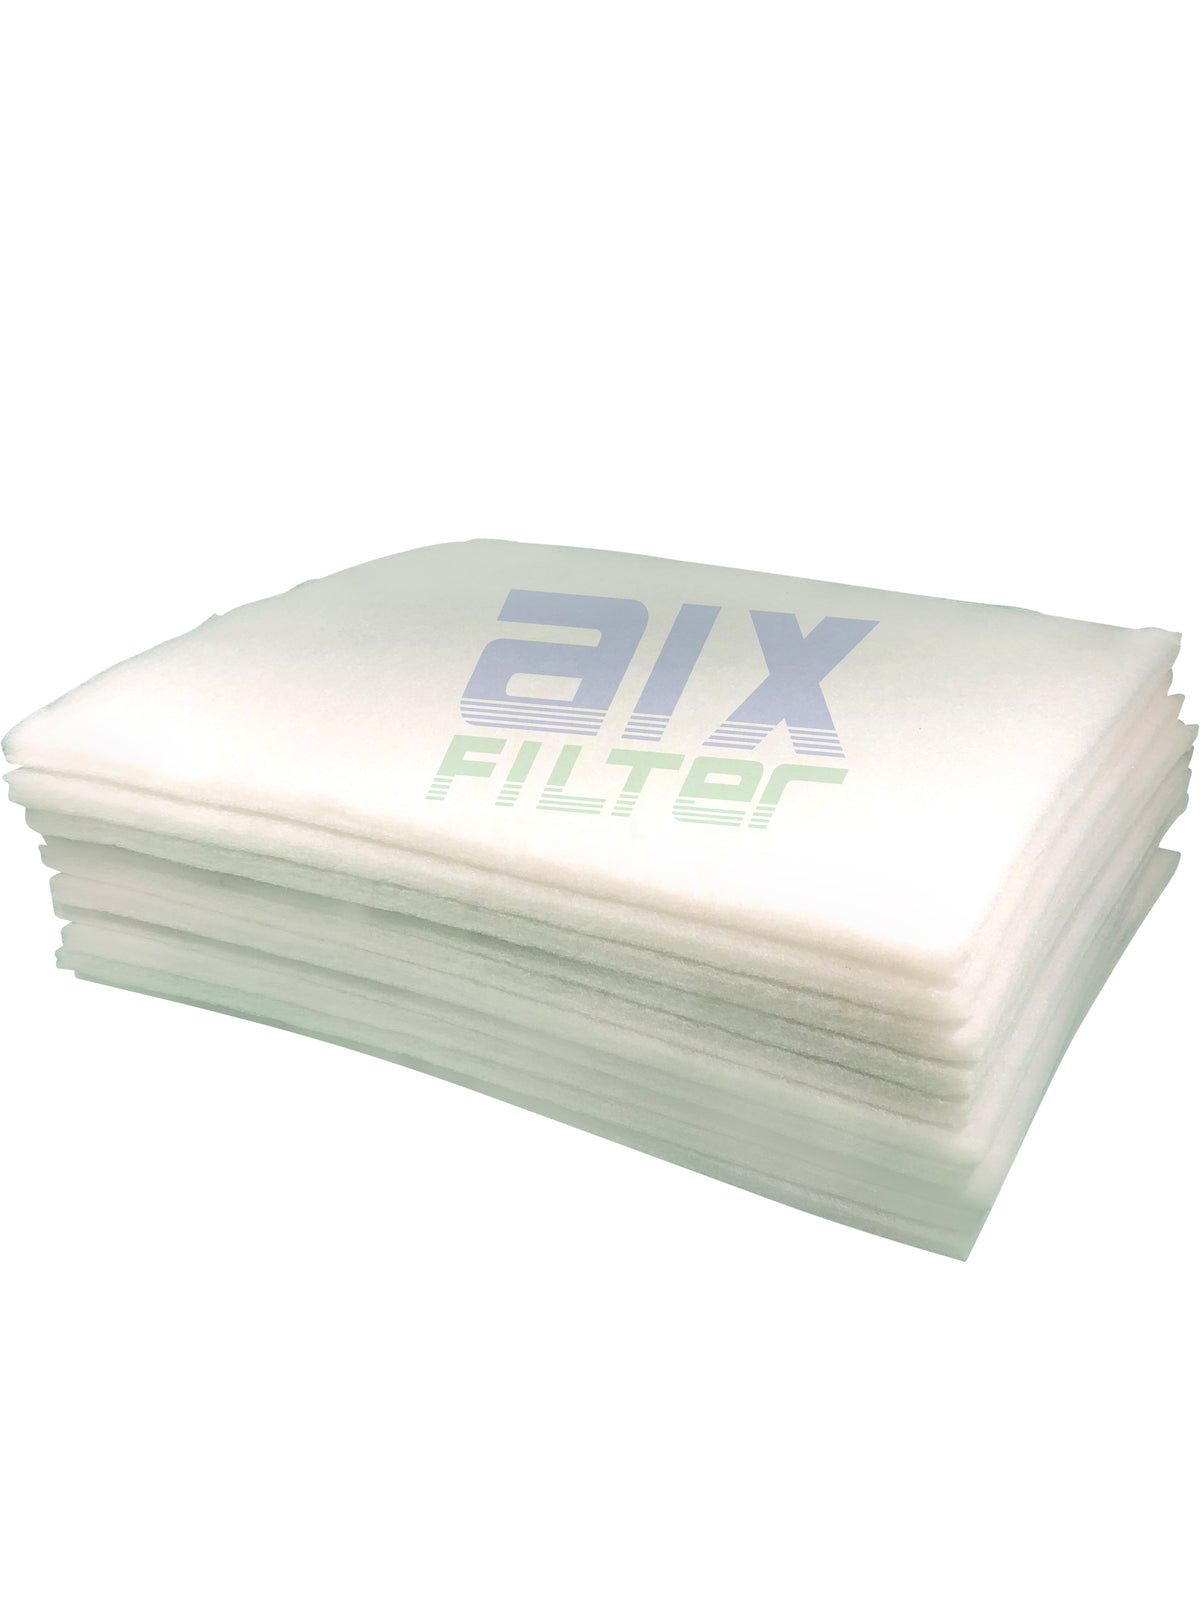 Filtermatte/Filterrolle Standard weiß für Lüfter und Hausgeräte Rolle 10 x  1 m Filterklasse G3 zum Zuschneiden : : Küche, Haushalt & Wohnen